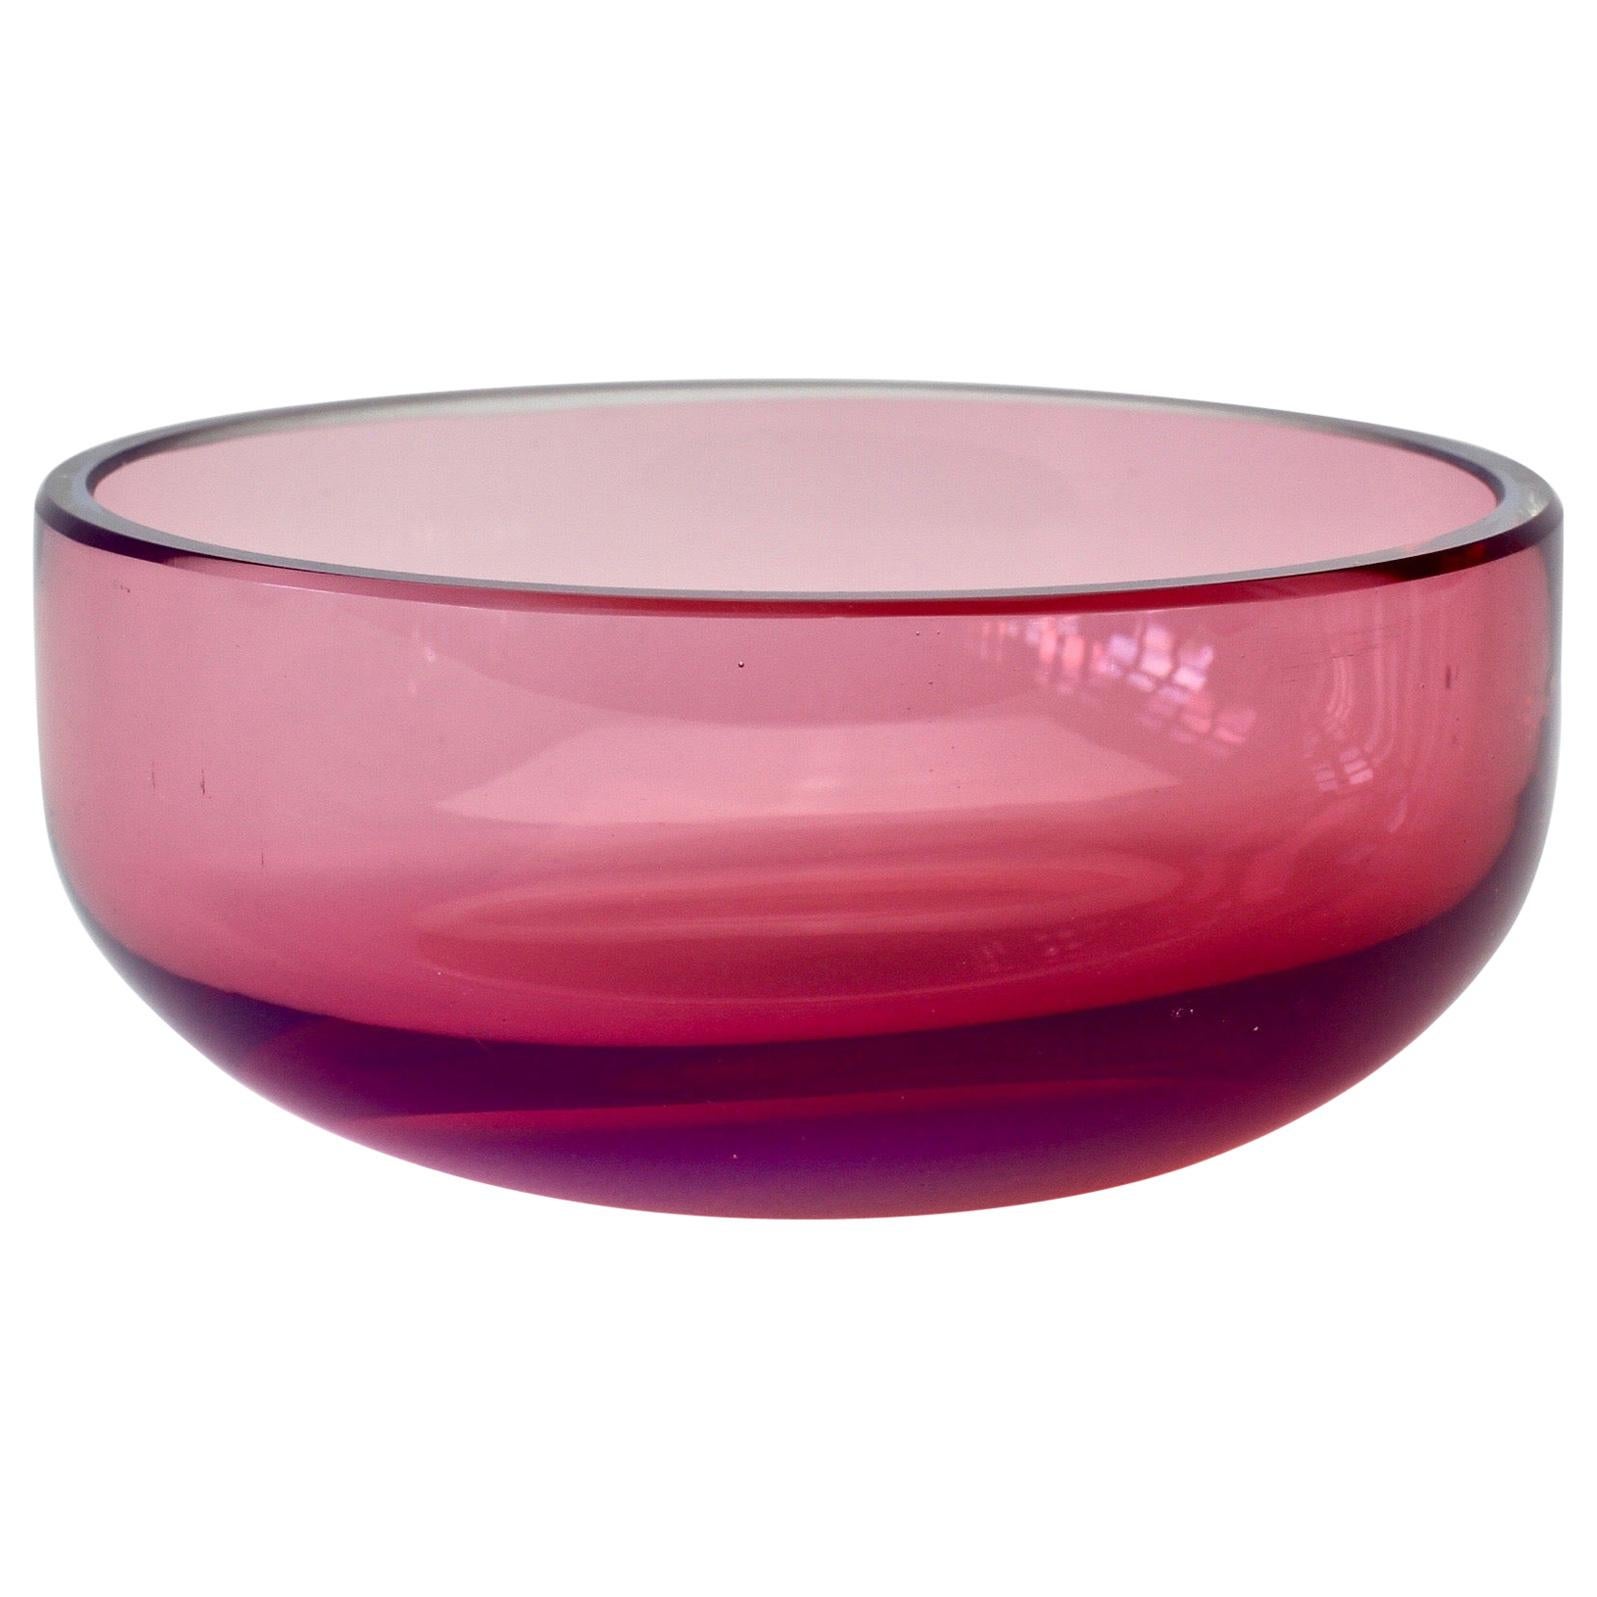 Antonio da Ros for Cenedese Vibrant Pink and Purple Colored Murano Glass Bowl